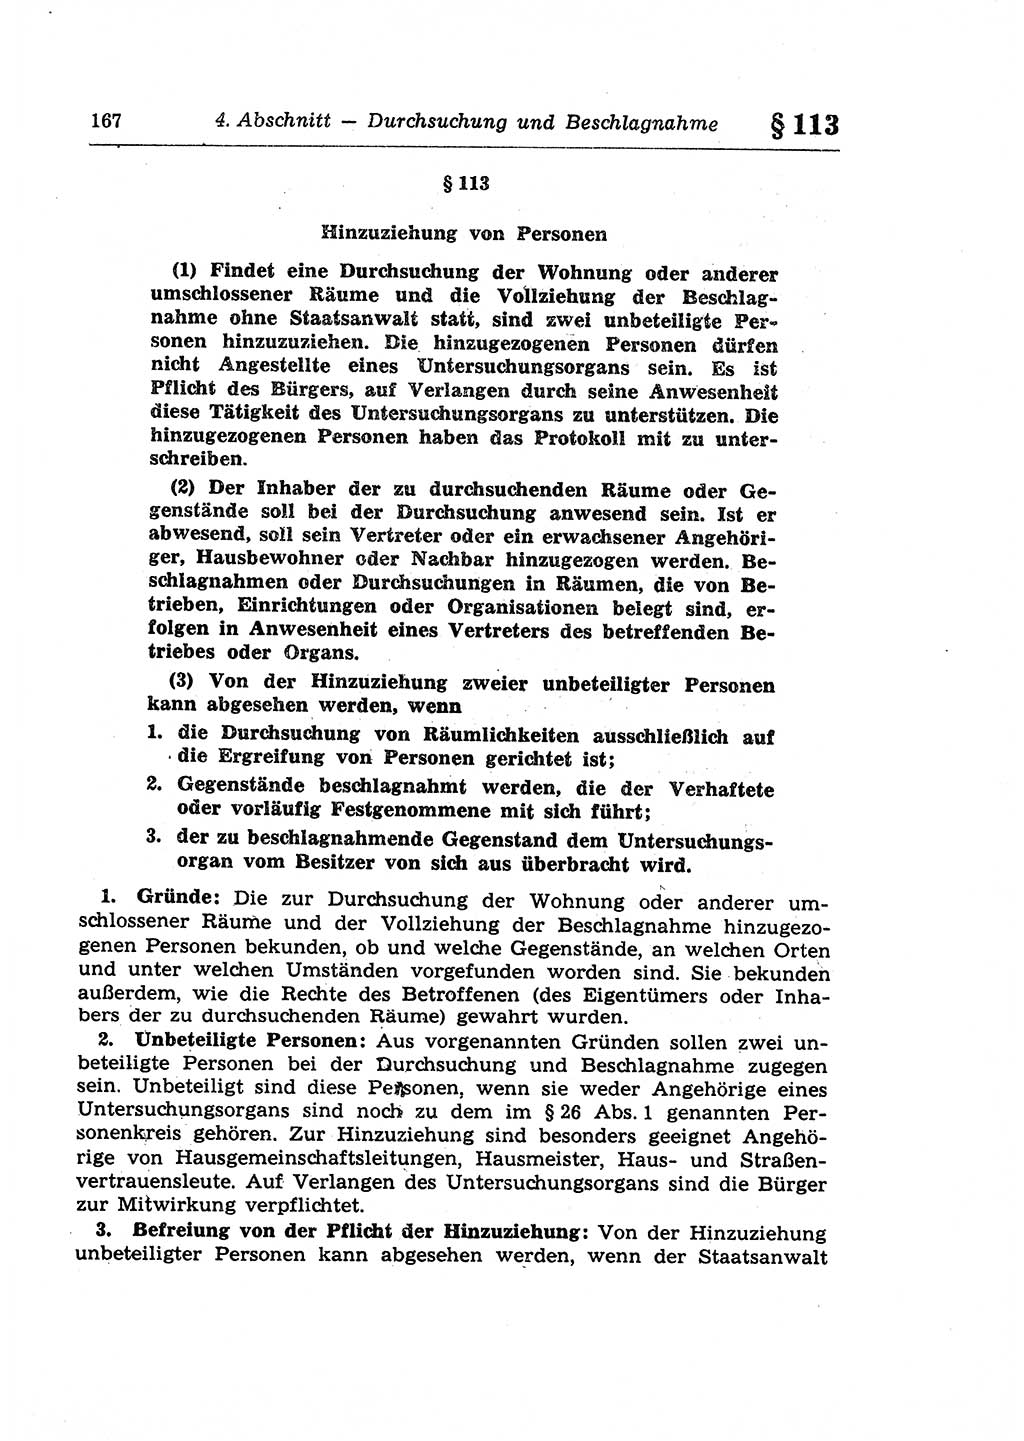 Strafprozeßrecht der DDR (Deutsche Demokratische Republik), Lehrkommentar zur Strafprozeßordnung (StPO) 1968, Seite 167 (Strafprozeßr. DDR Lehrkomm. StPO 19688, S. 167)